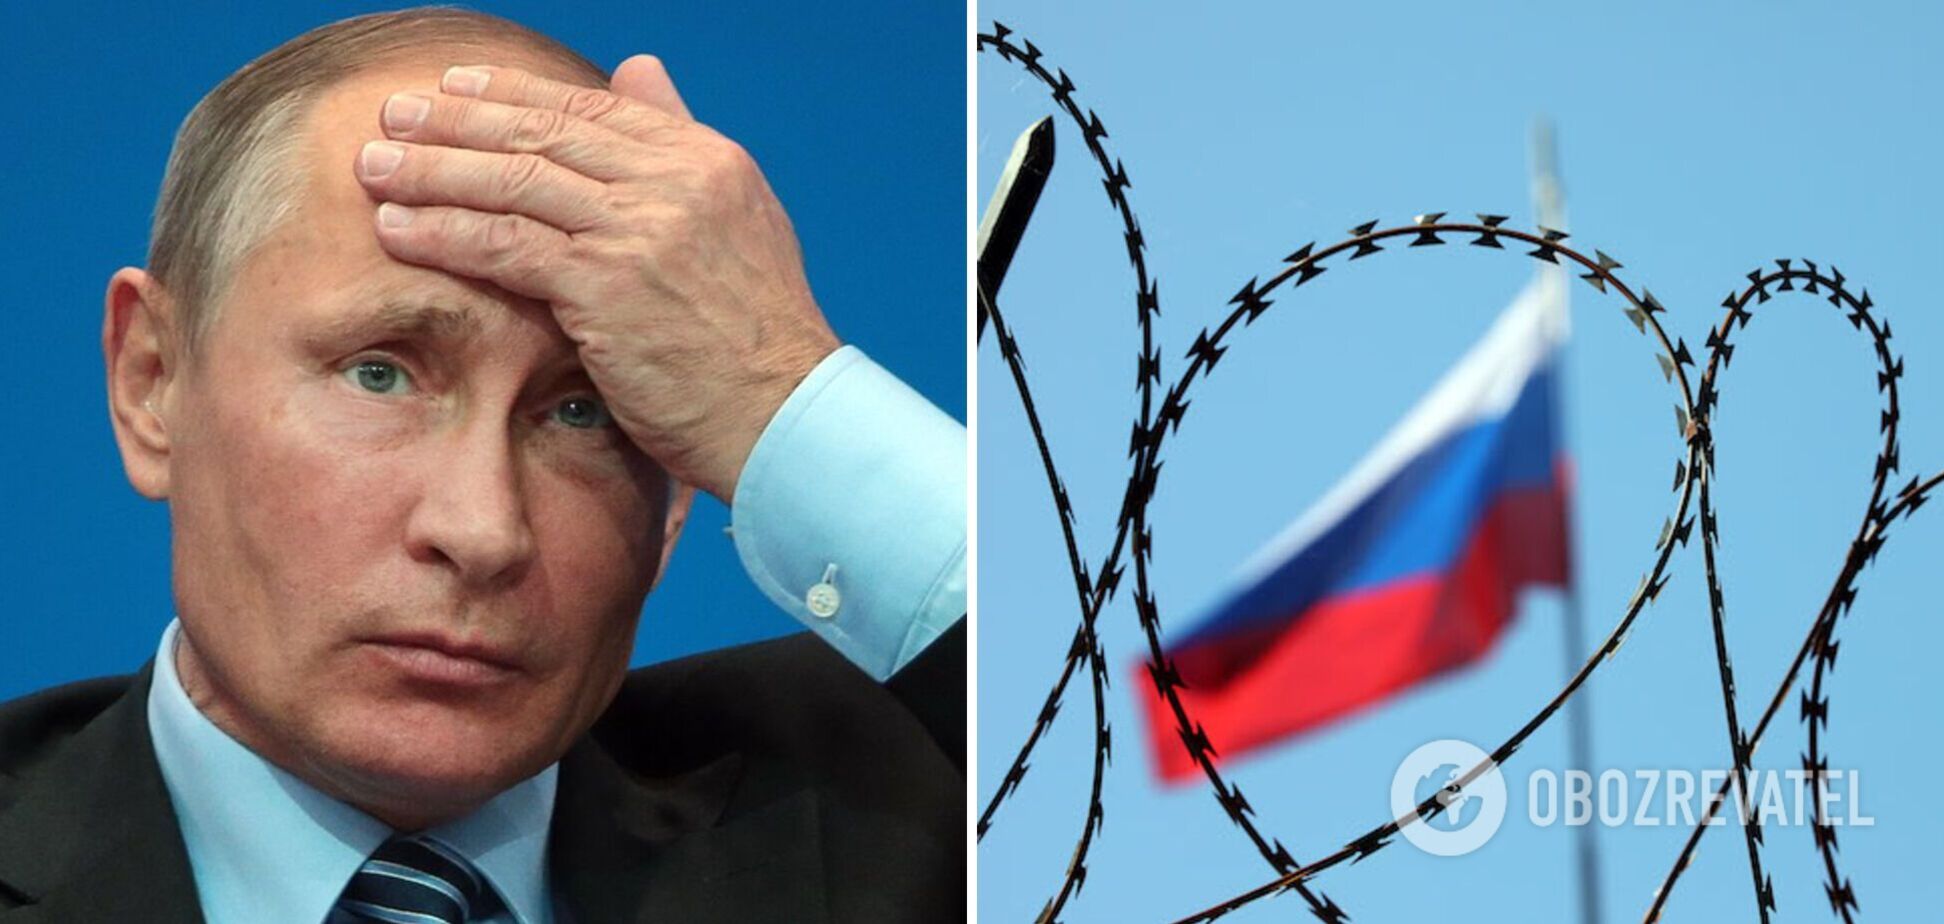 Путин в бункере фактически арестован: всё больше подтверждений